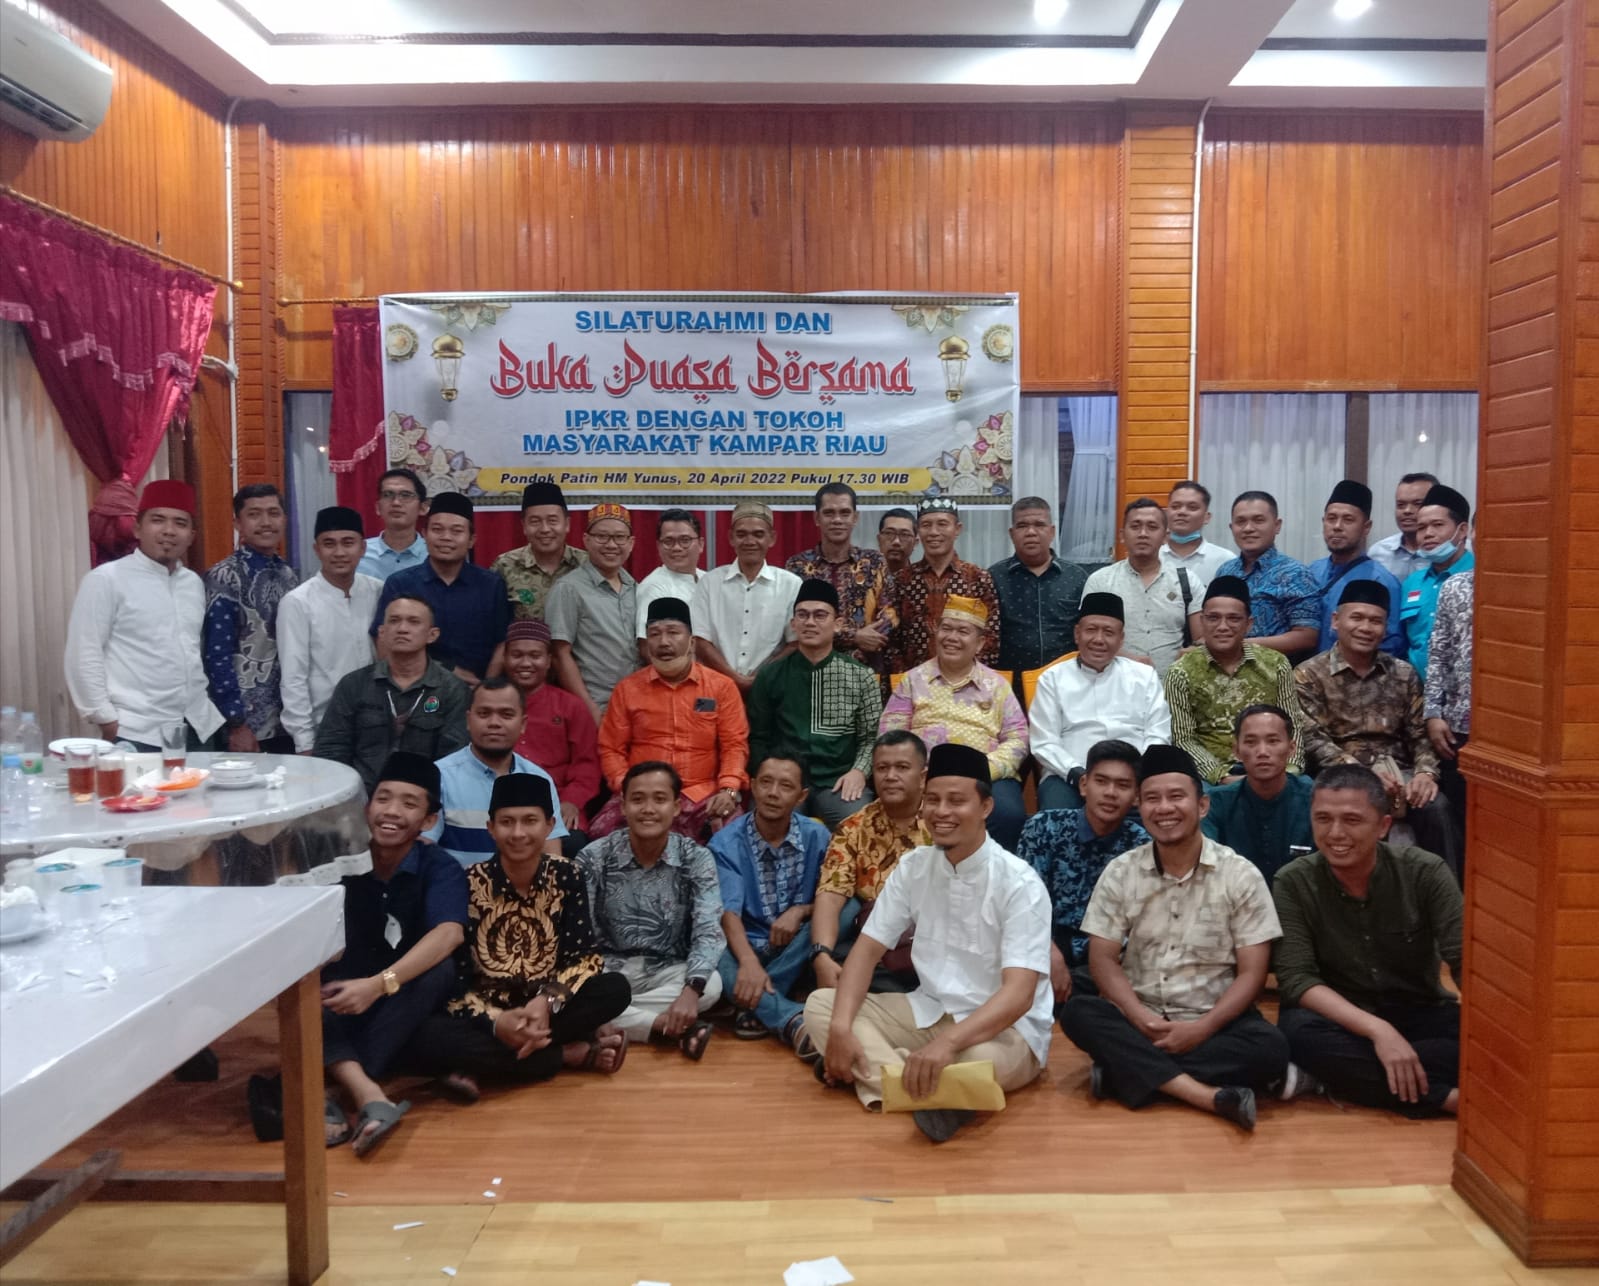 IPKR Gelar Silahturahmi dan Buka Puasa Bersama Dengan Tokoh Masyarakat Kampar Riau